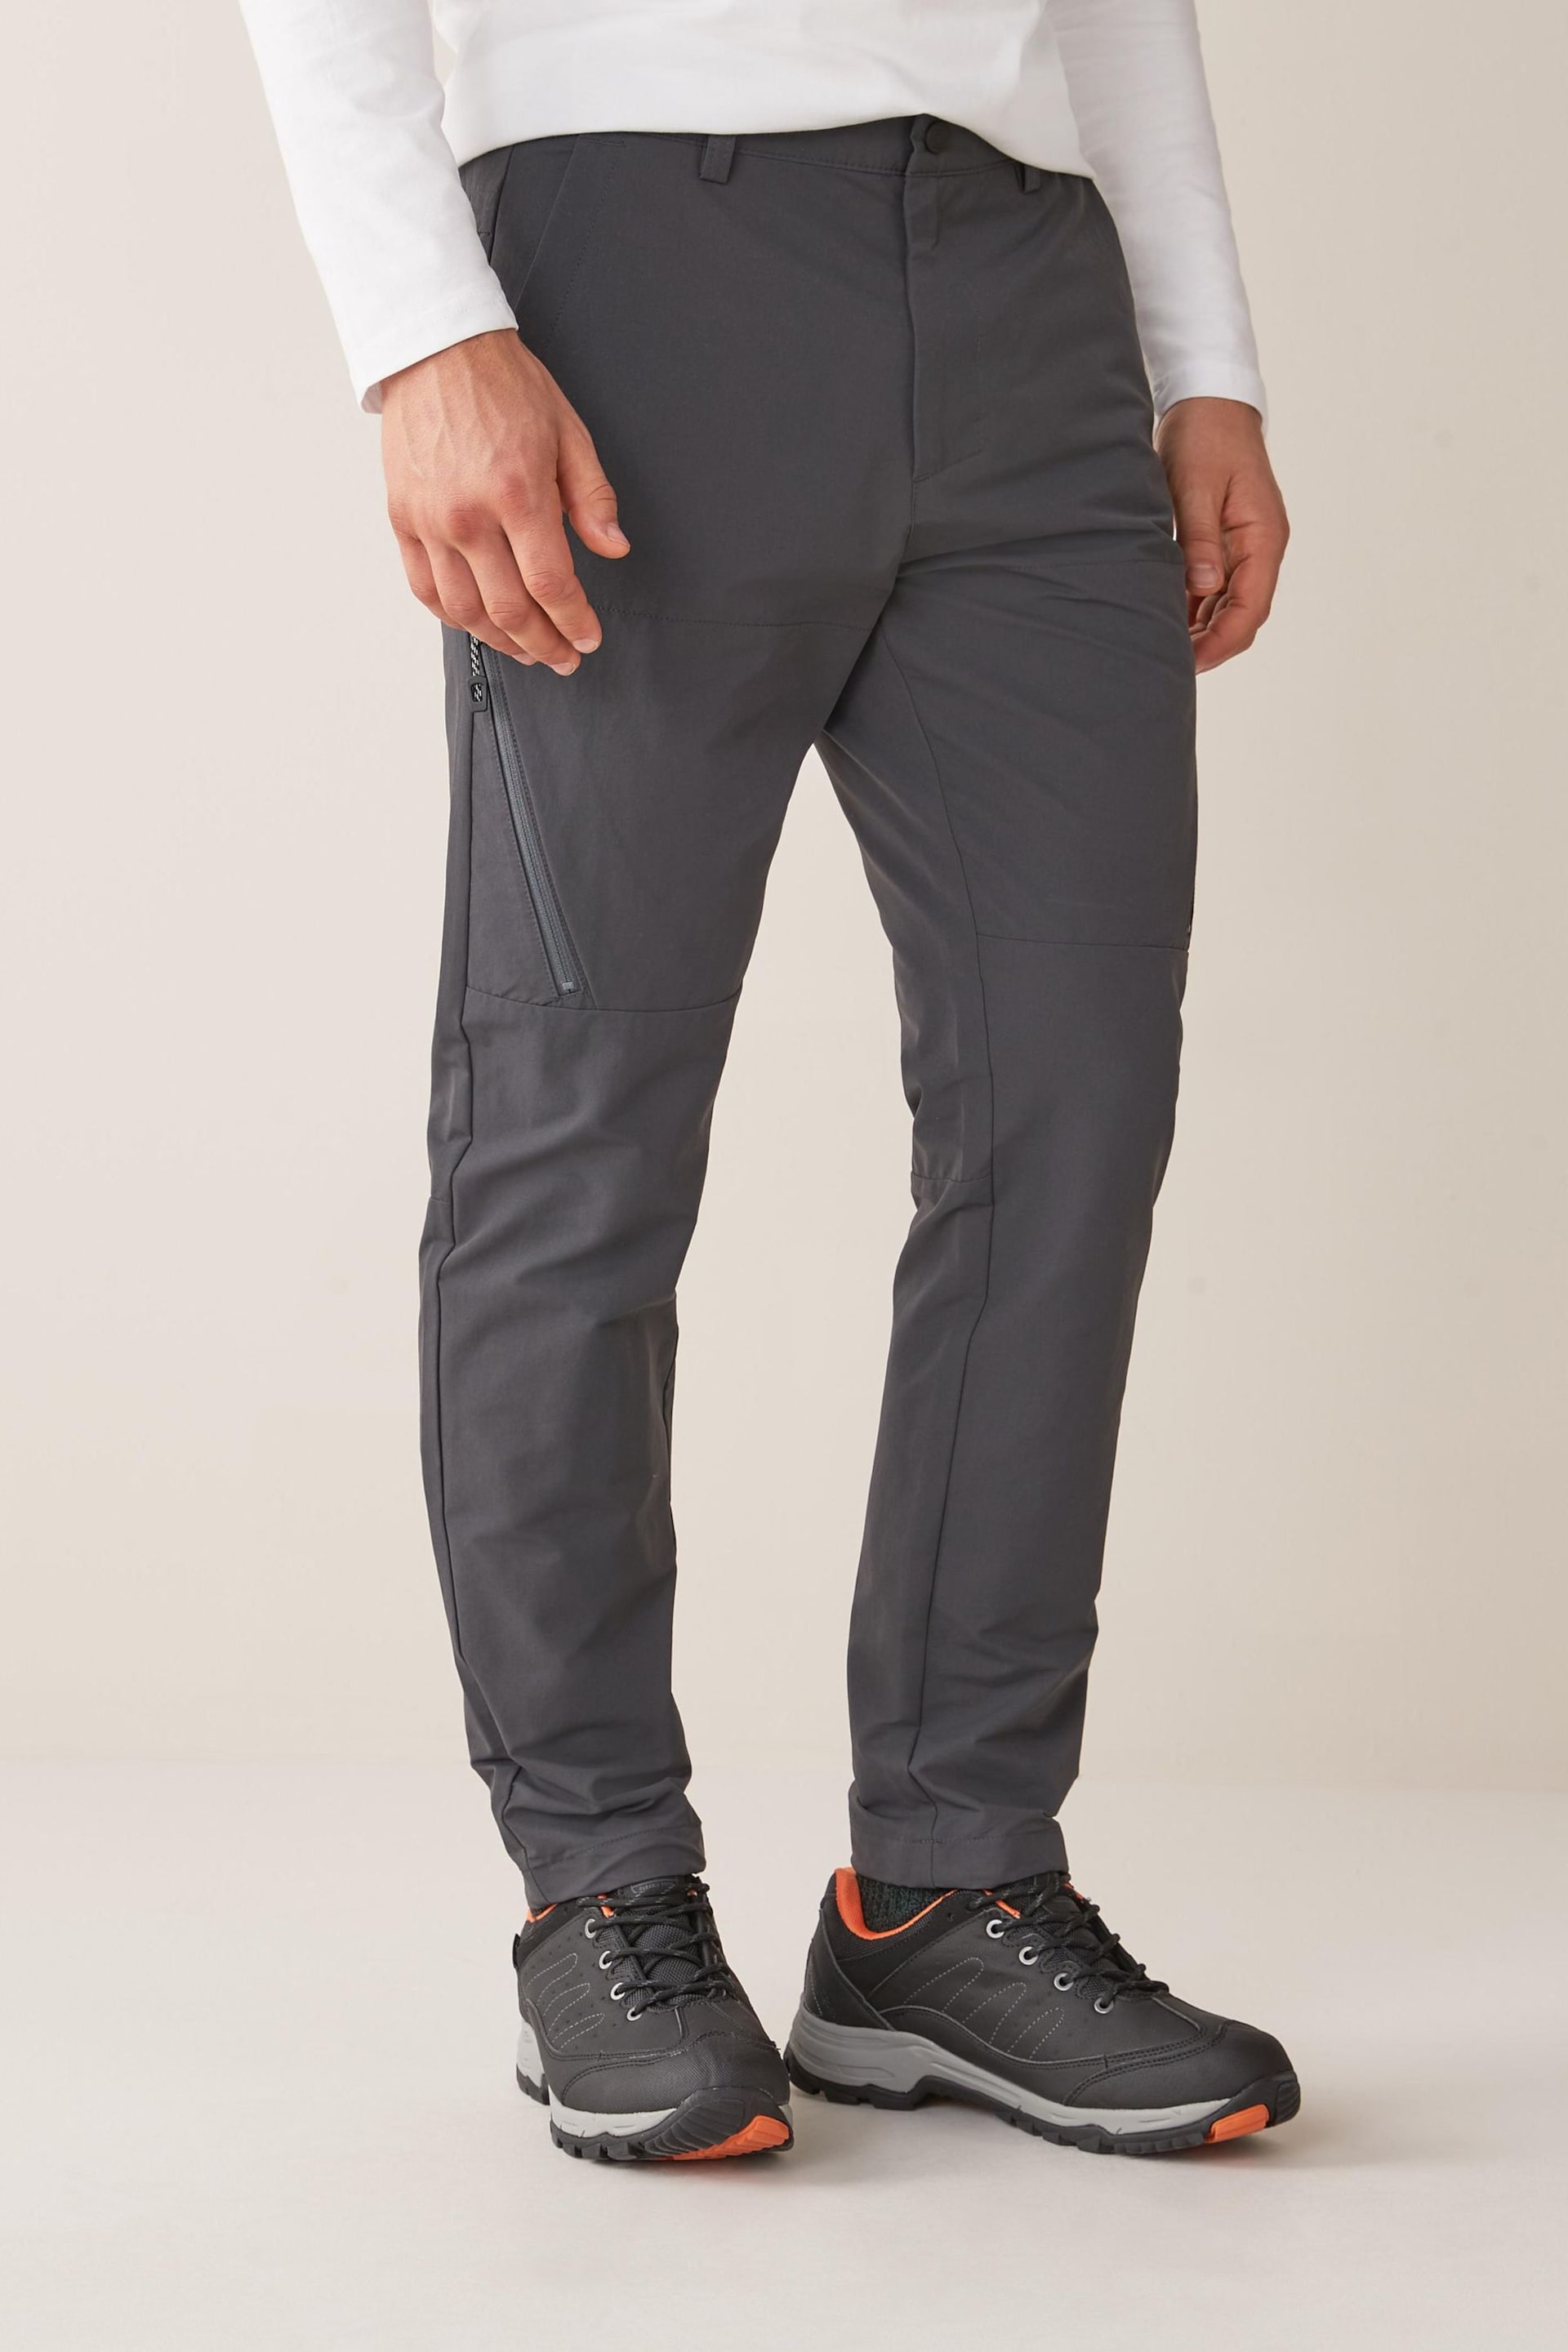 Dark Grey Slim Shower Resistant Walking Trousers - Image 1 of 7